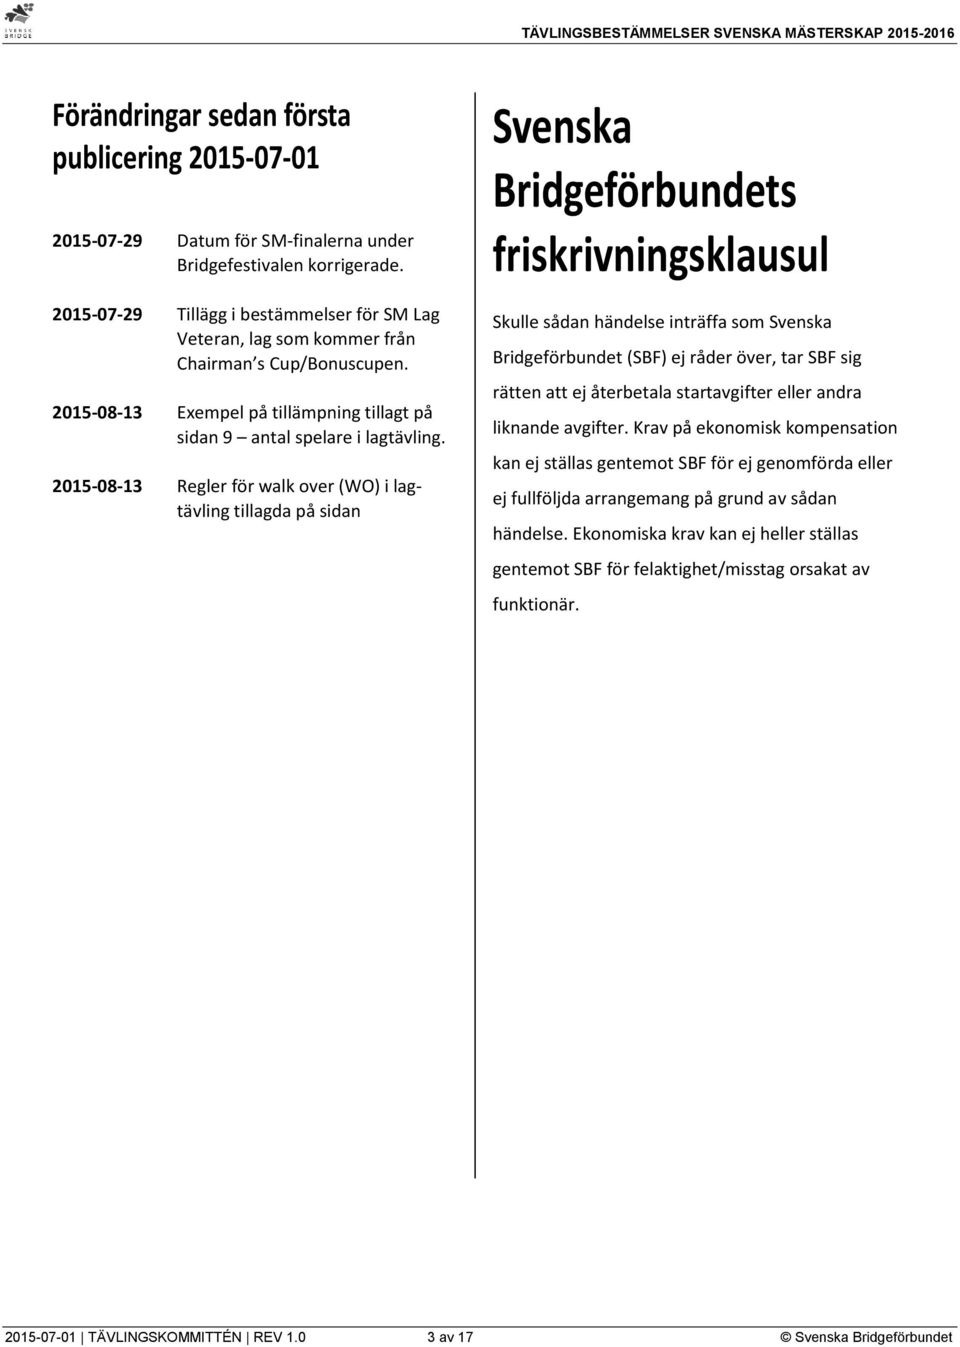 2015-08-13 Regler för walk over (WO) i lagtävling tillagda på sidan Svenska Bridgeförbundets friskrivningsklausul Skulle sådan händelse inträffa som Svenska Bridgeförbundet (SBF) ej råder över, tar